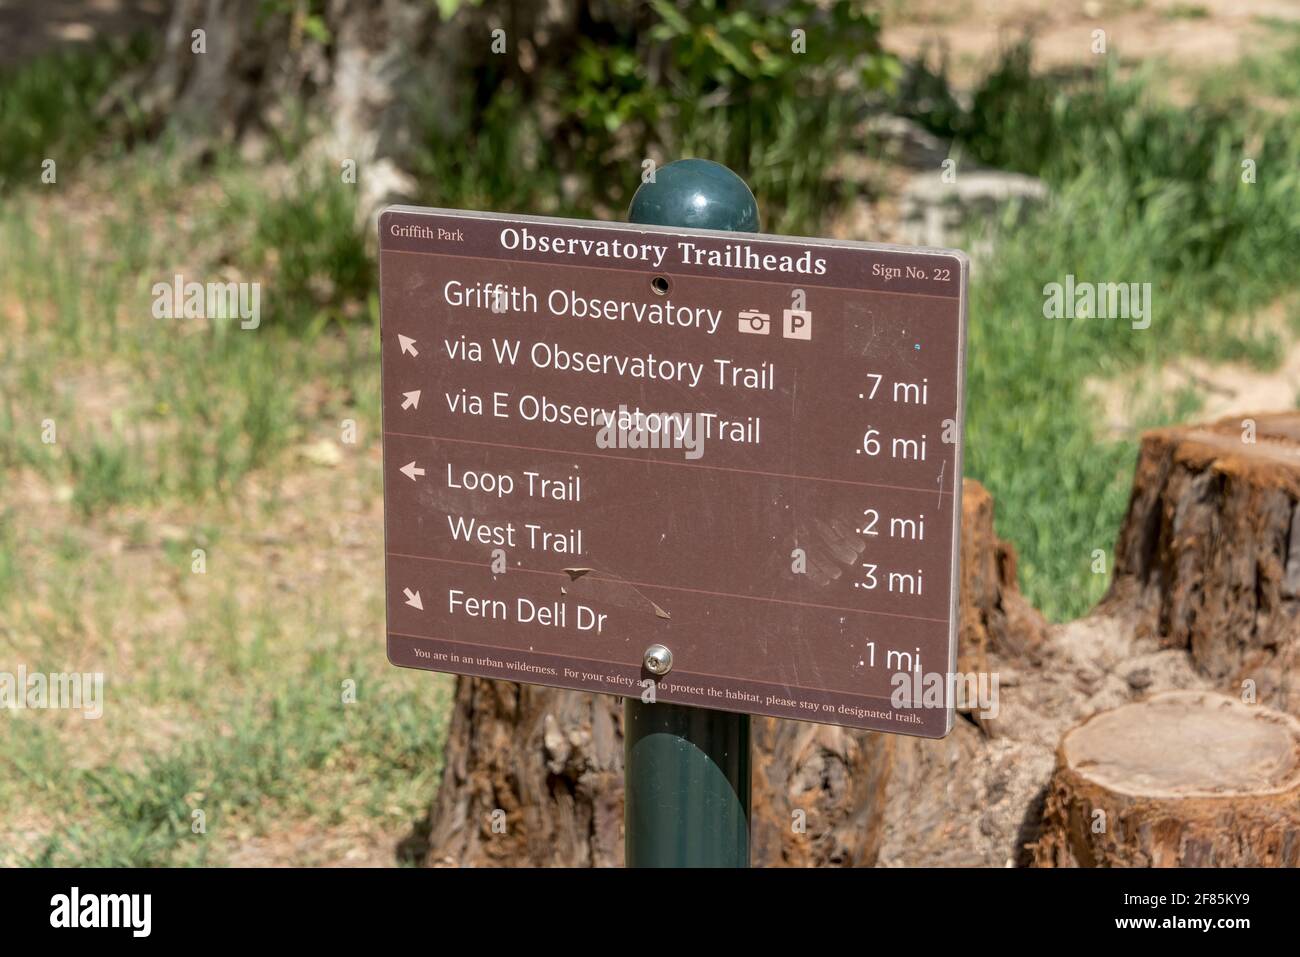 Cartello Trailhead per Griffith Observatory, sentieri ovest ed est con Fern Dell Drive. I sentieri formano un popolare anello escursionistico con vista su Los Angeles. Foto Stock